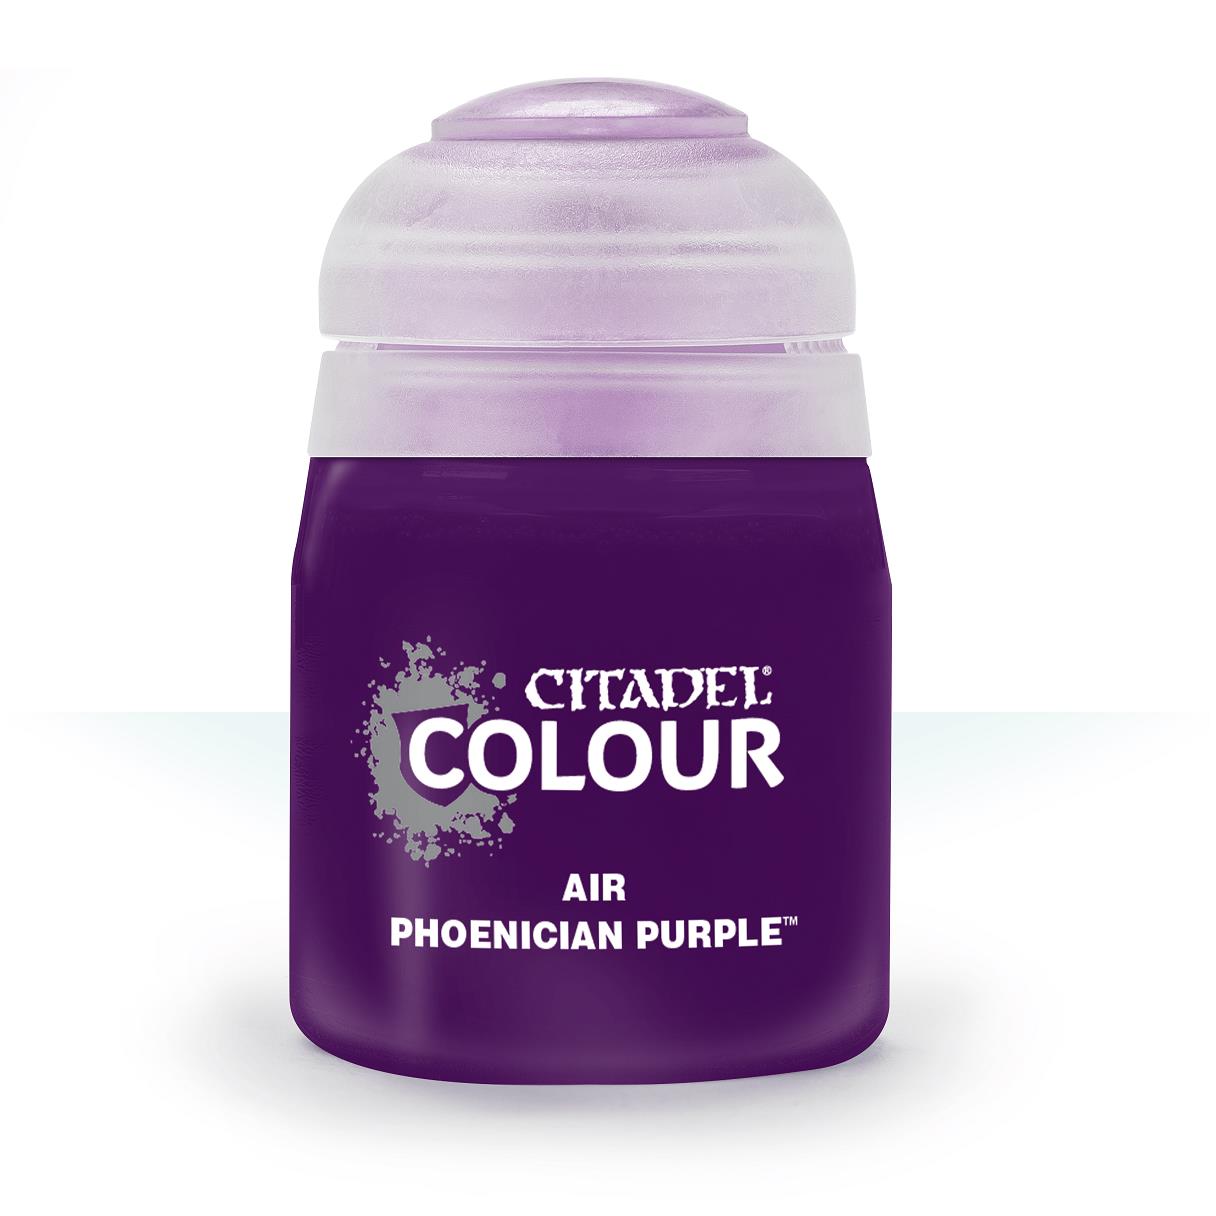 Air: Pheonician Purple